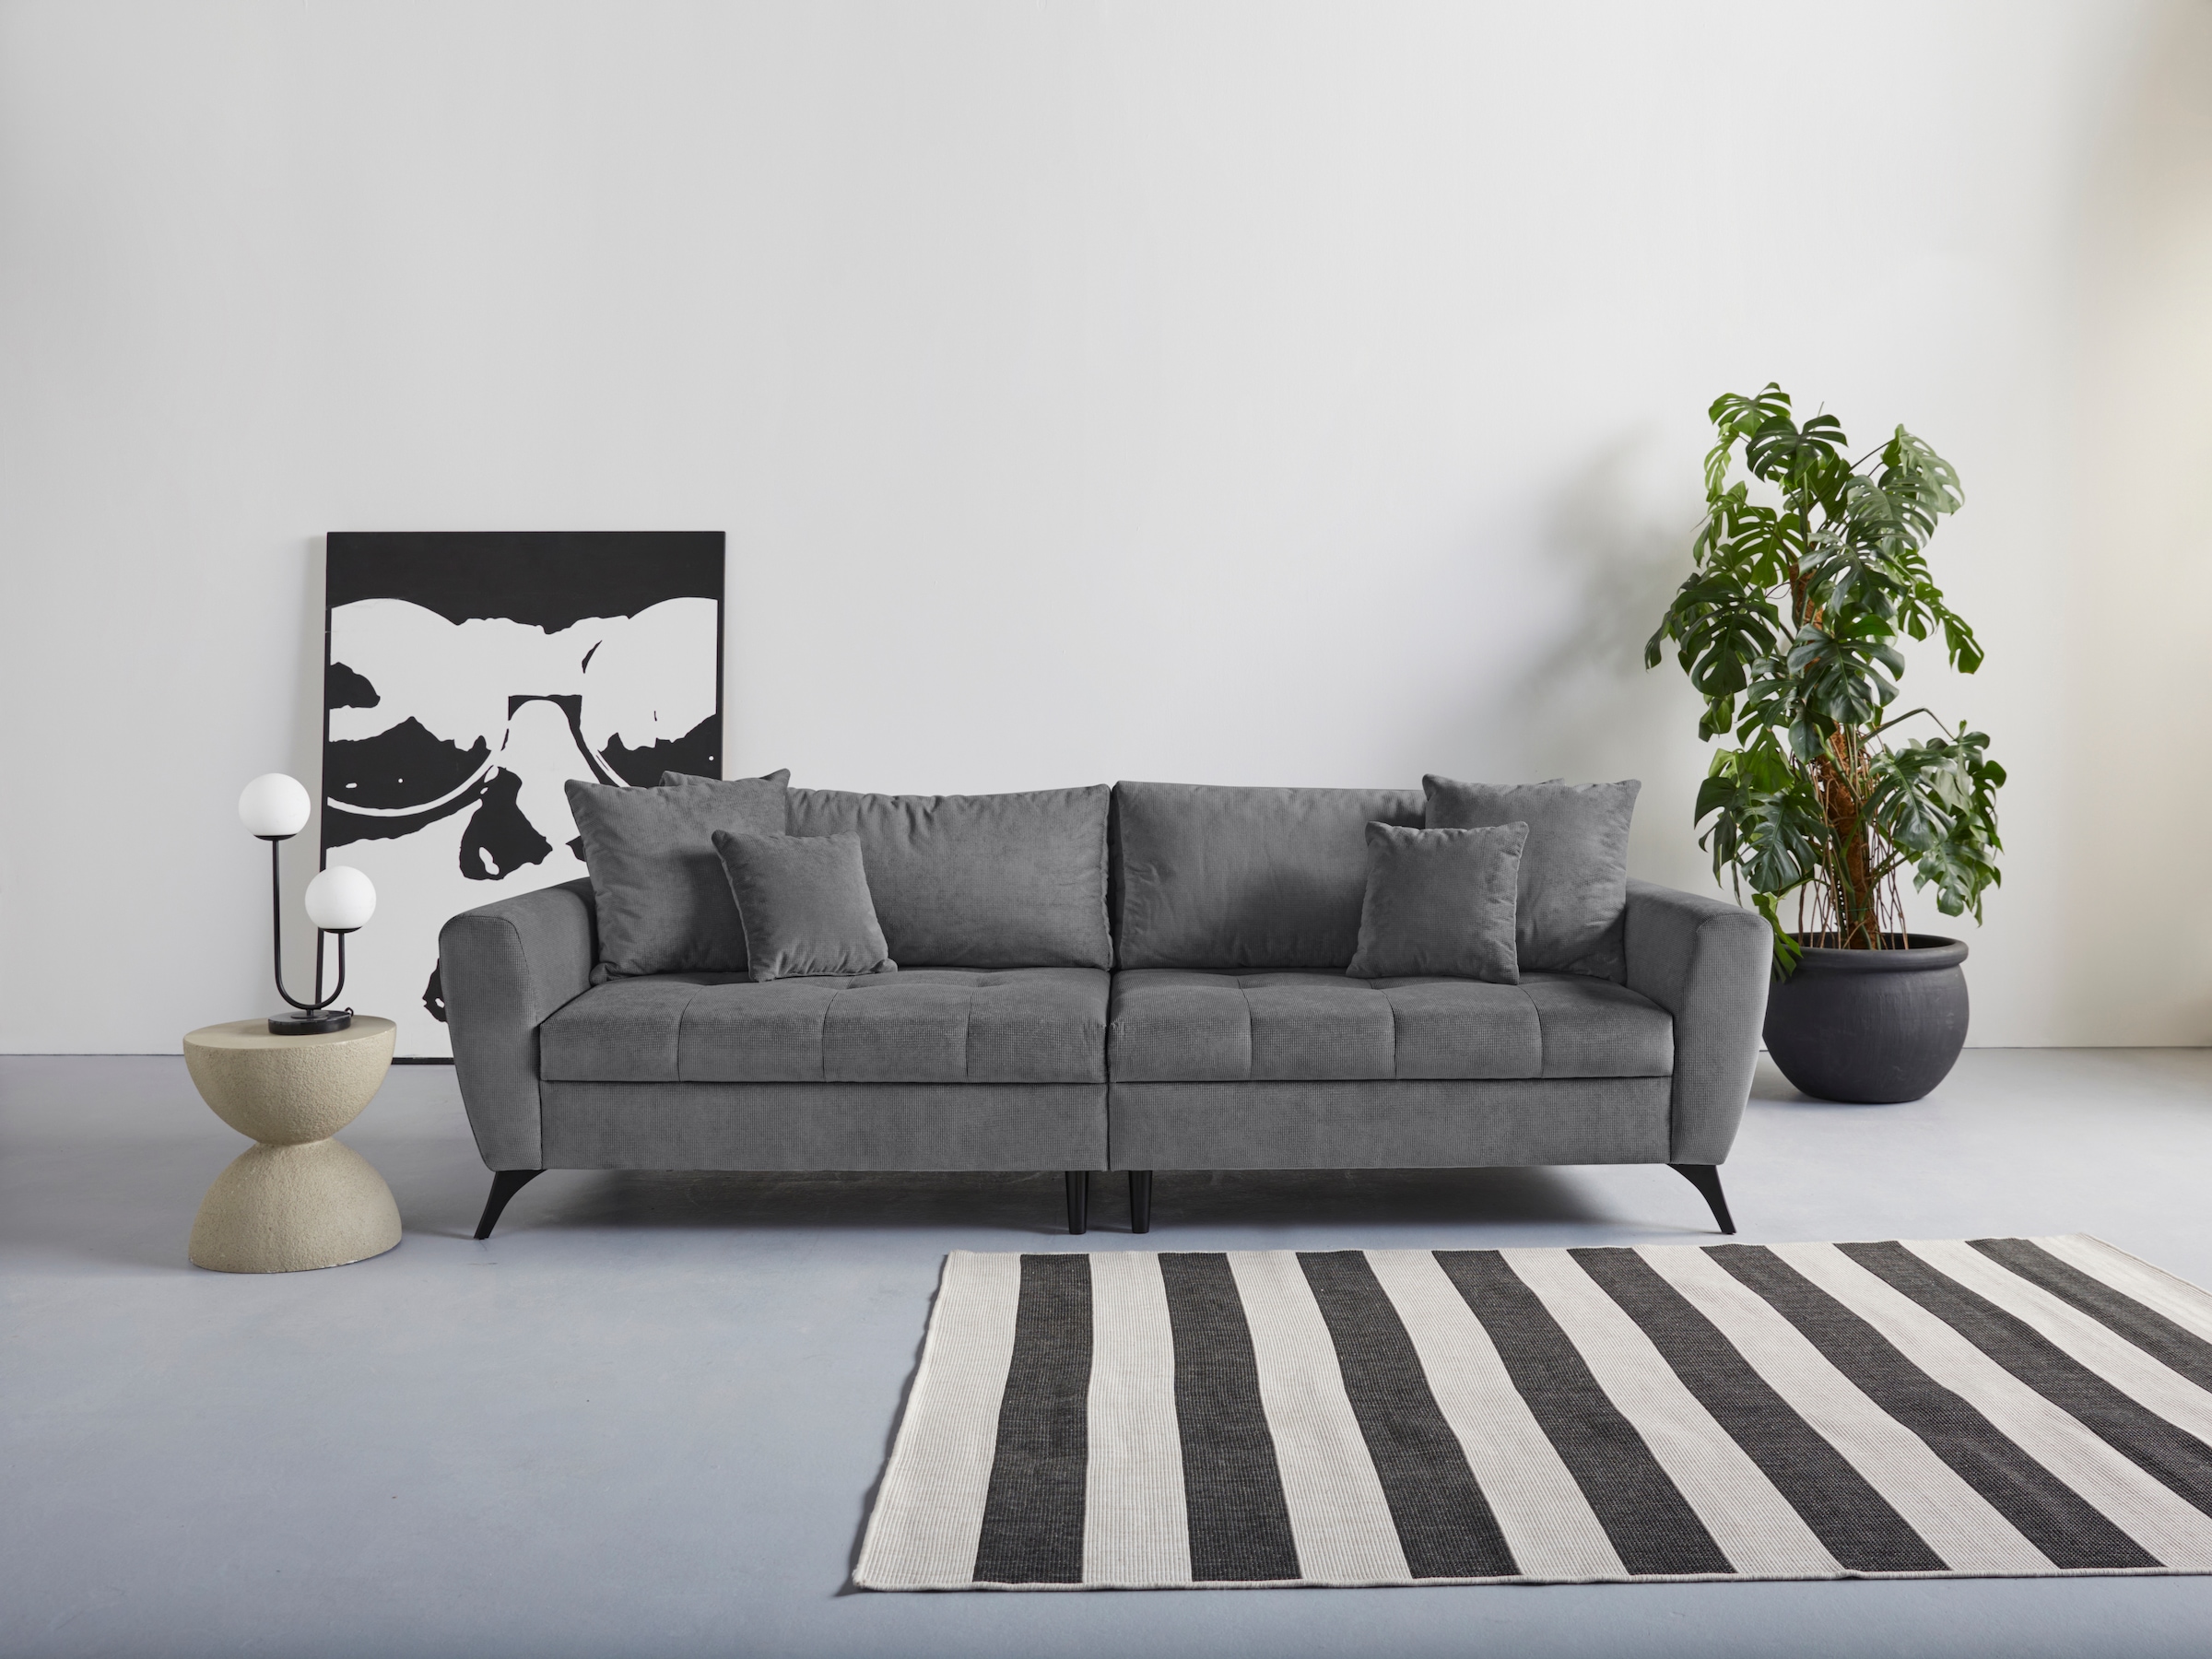 Big-Sofa »Lörby«, auch mit Aqua clean-Bezug, feine Steppung im Sitzbereich, lose Kissen